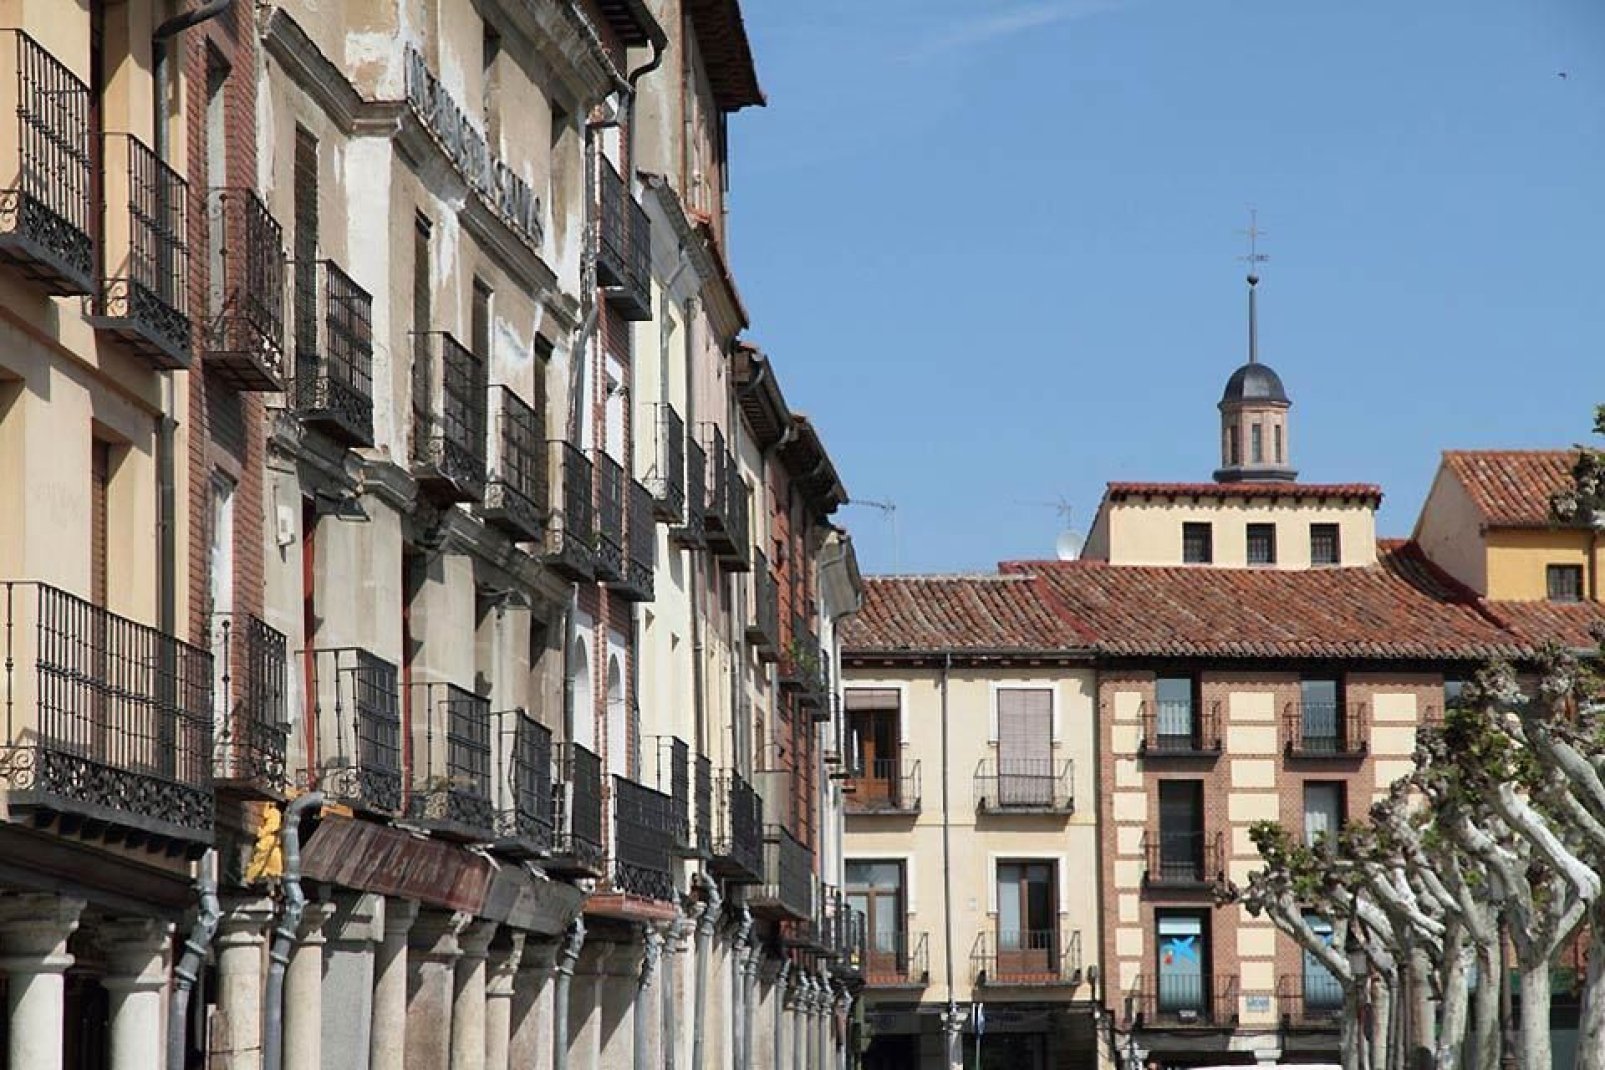 La calle Mayor sale de esta plaza. Es la calle con soportales más larga de España (mide aproximadamente 1 km).